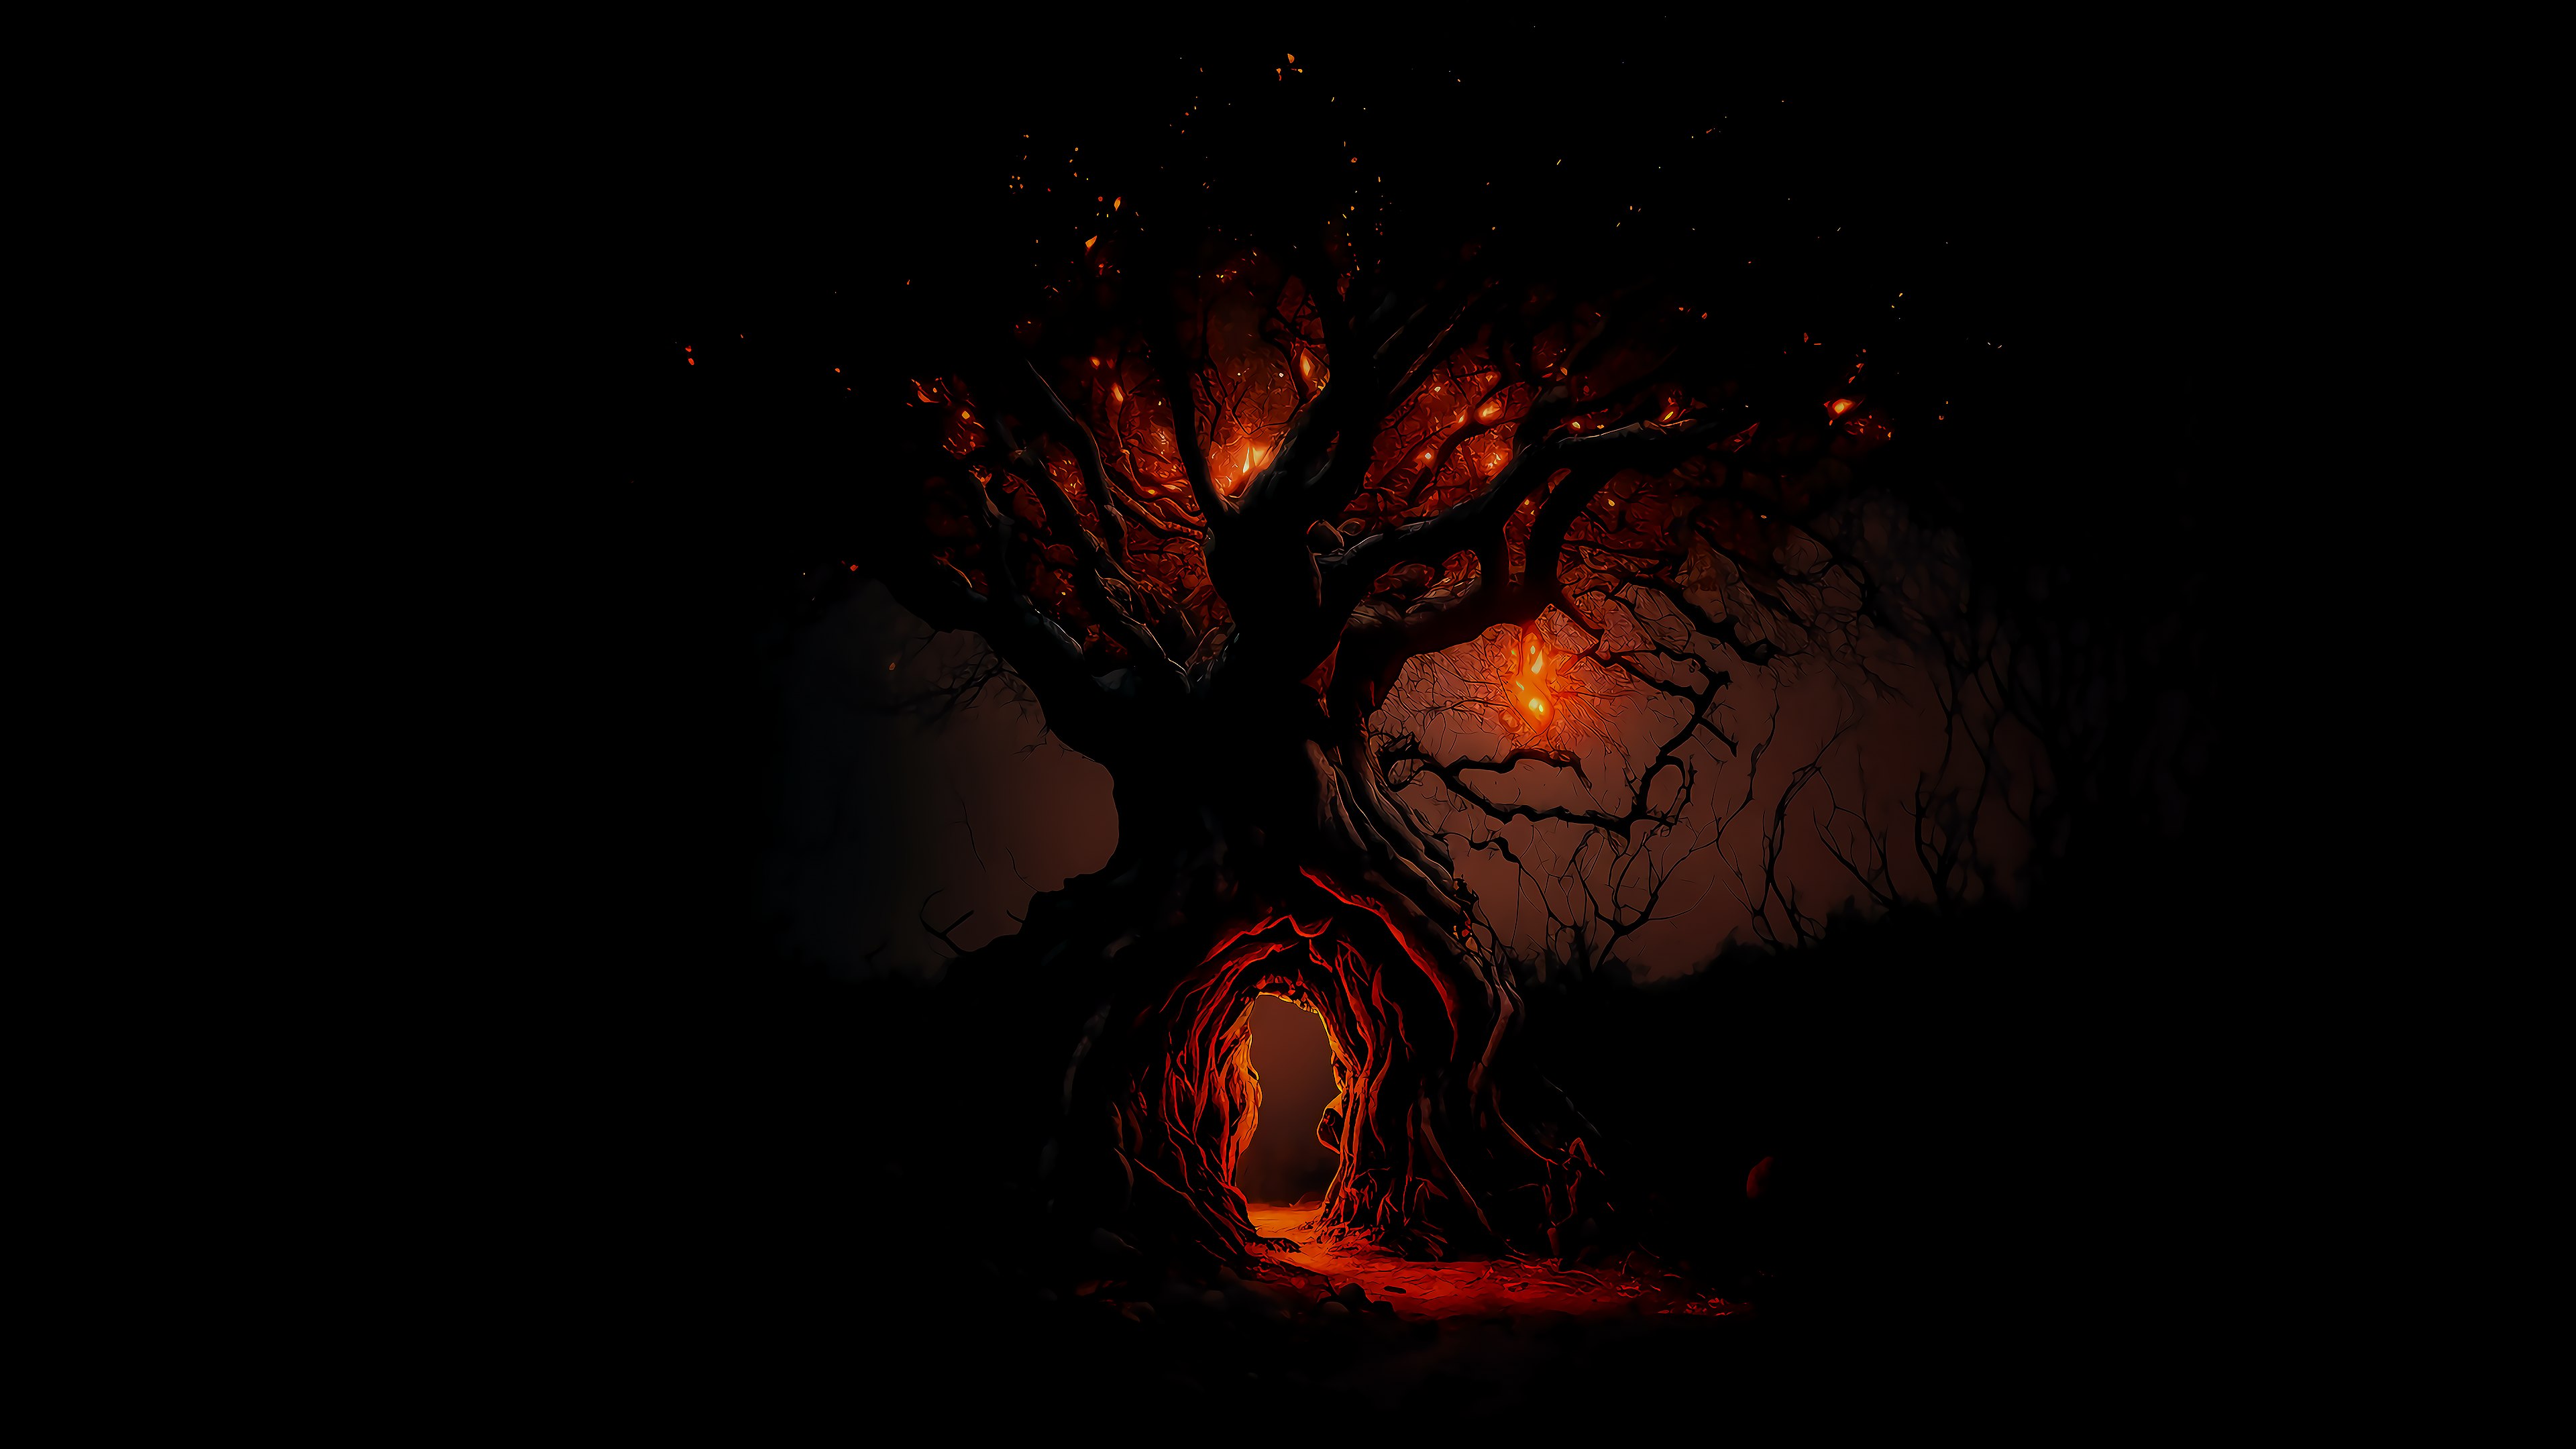 Black Wallpaper 4K for PC: Magical Tree Illustration